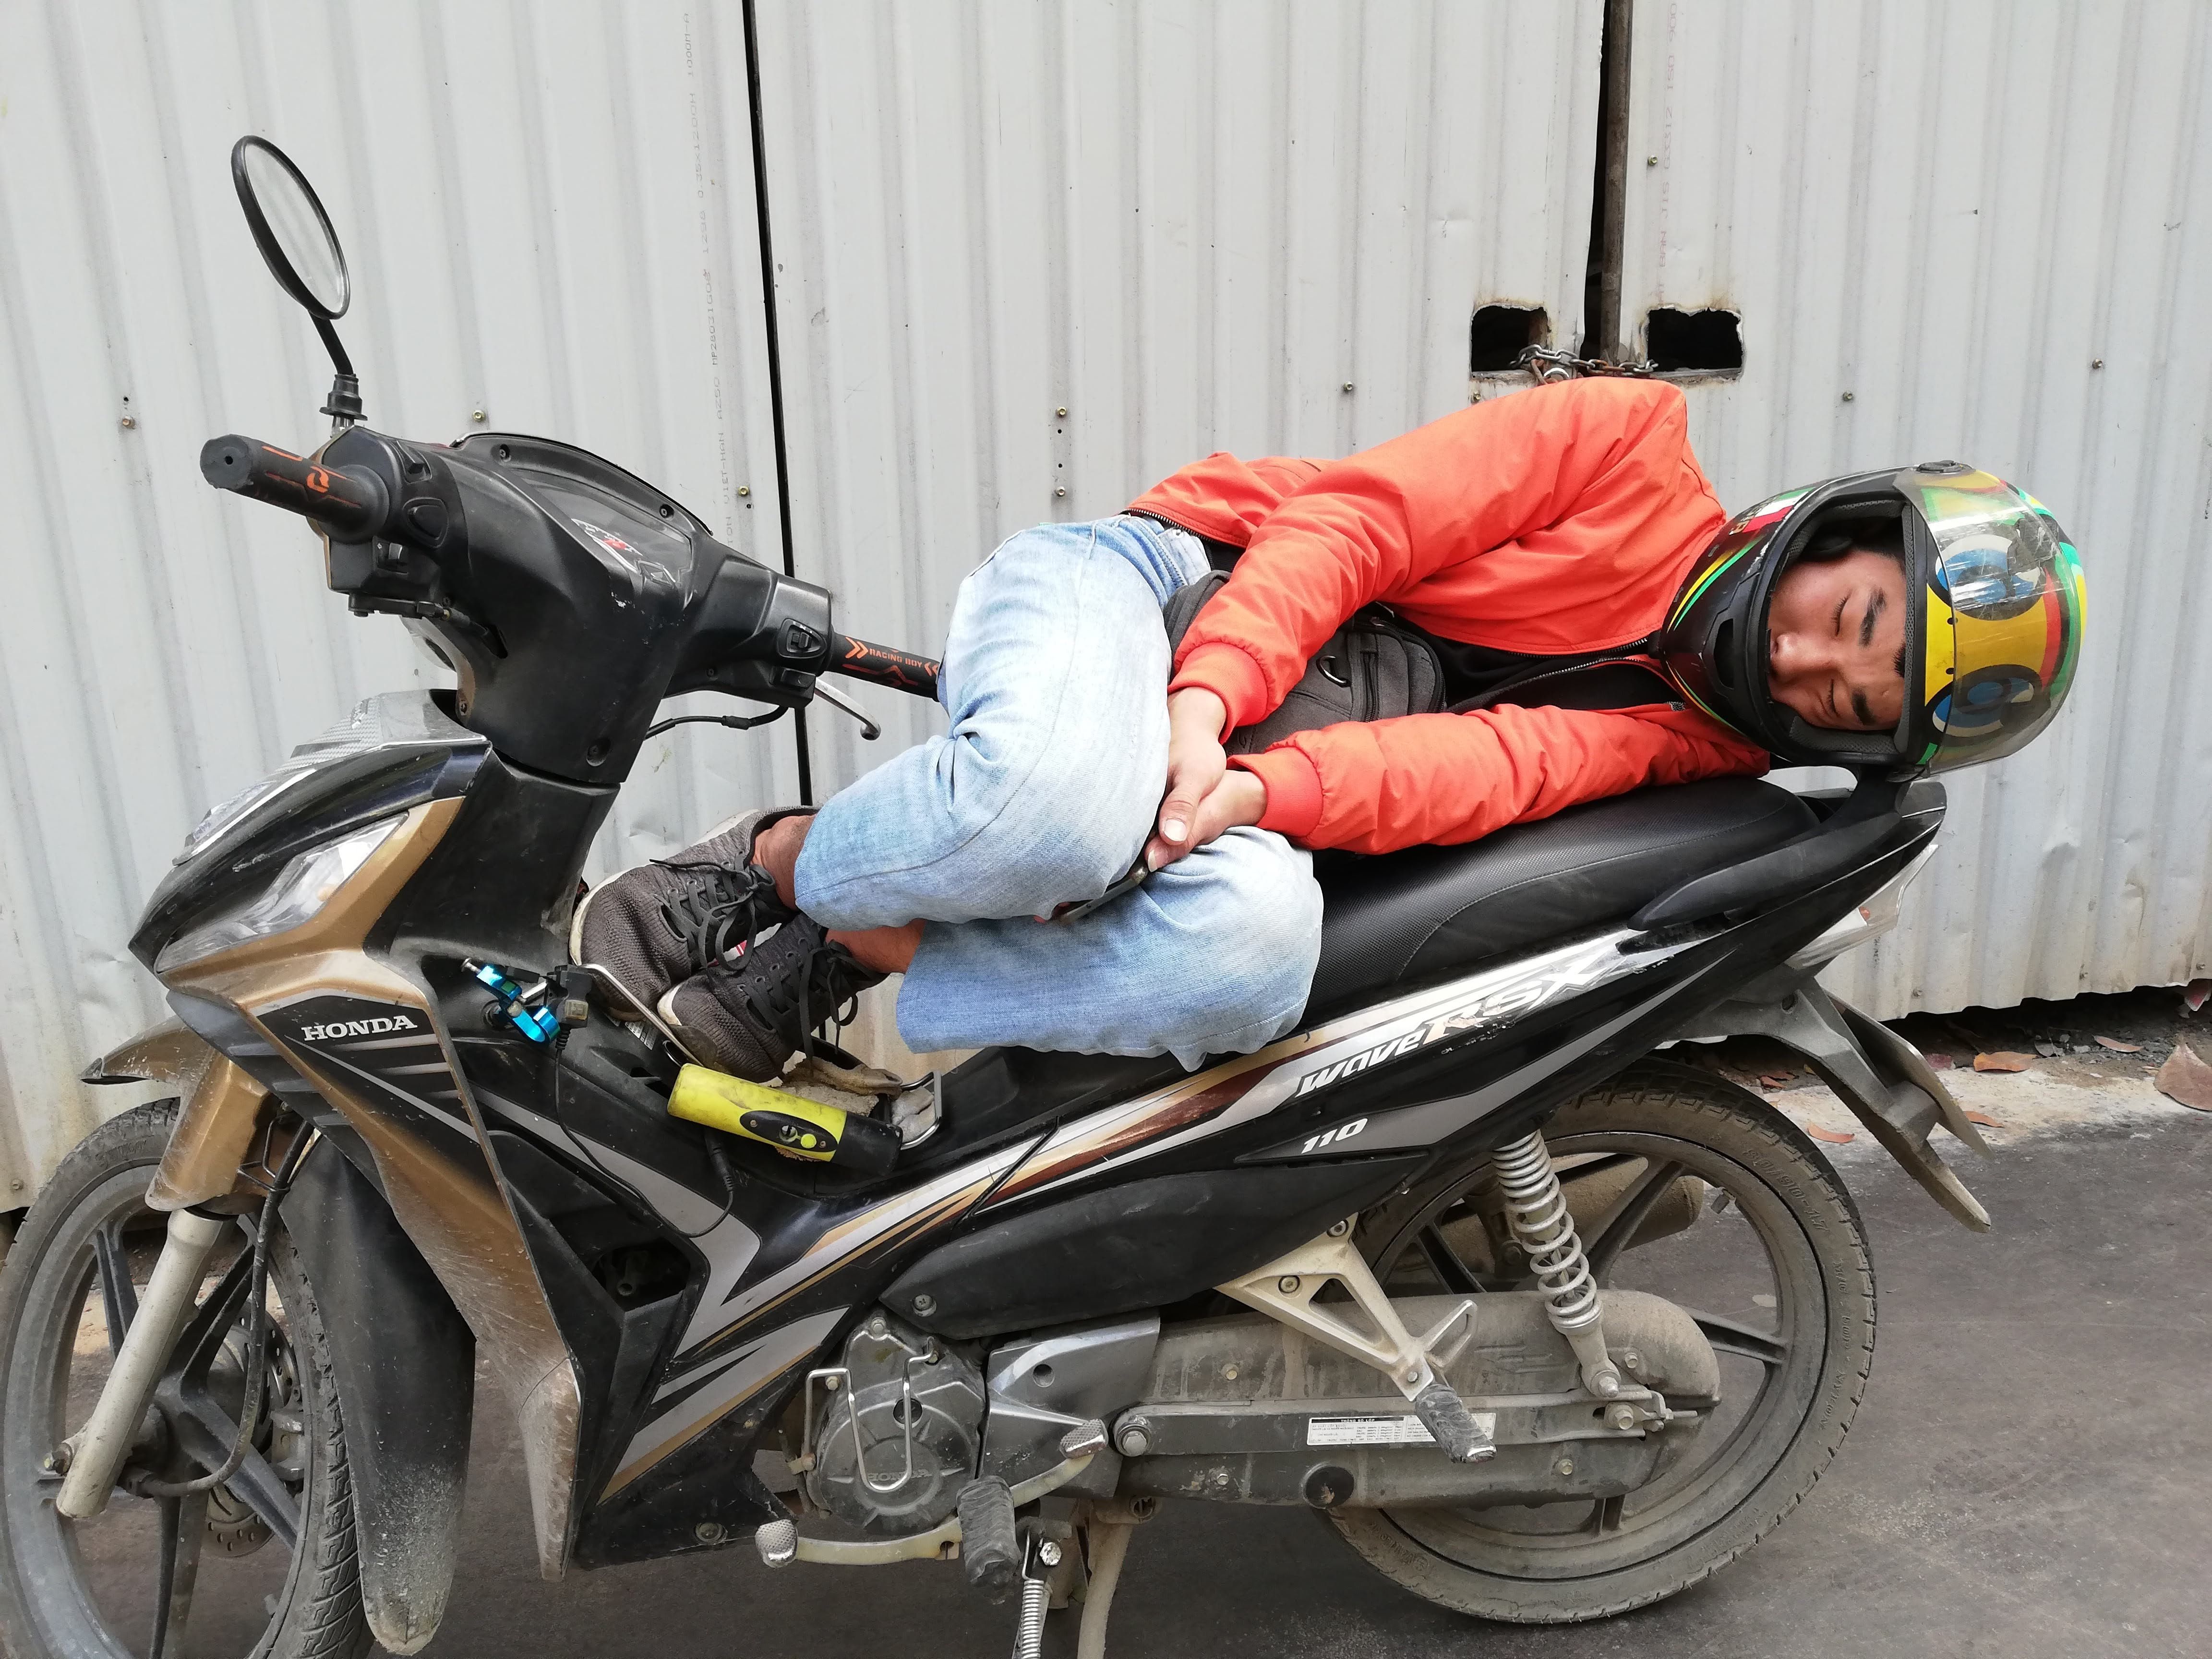 Woman sleeping on her motorcycle